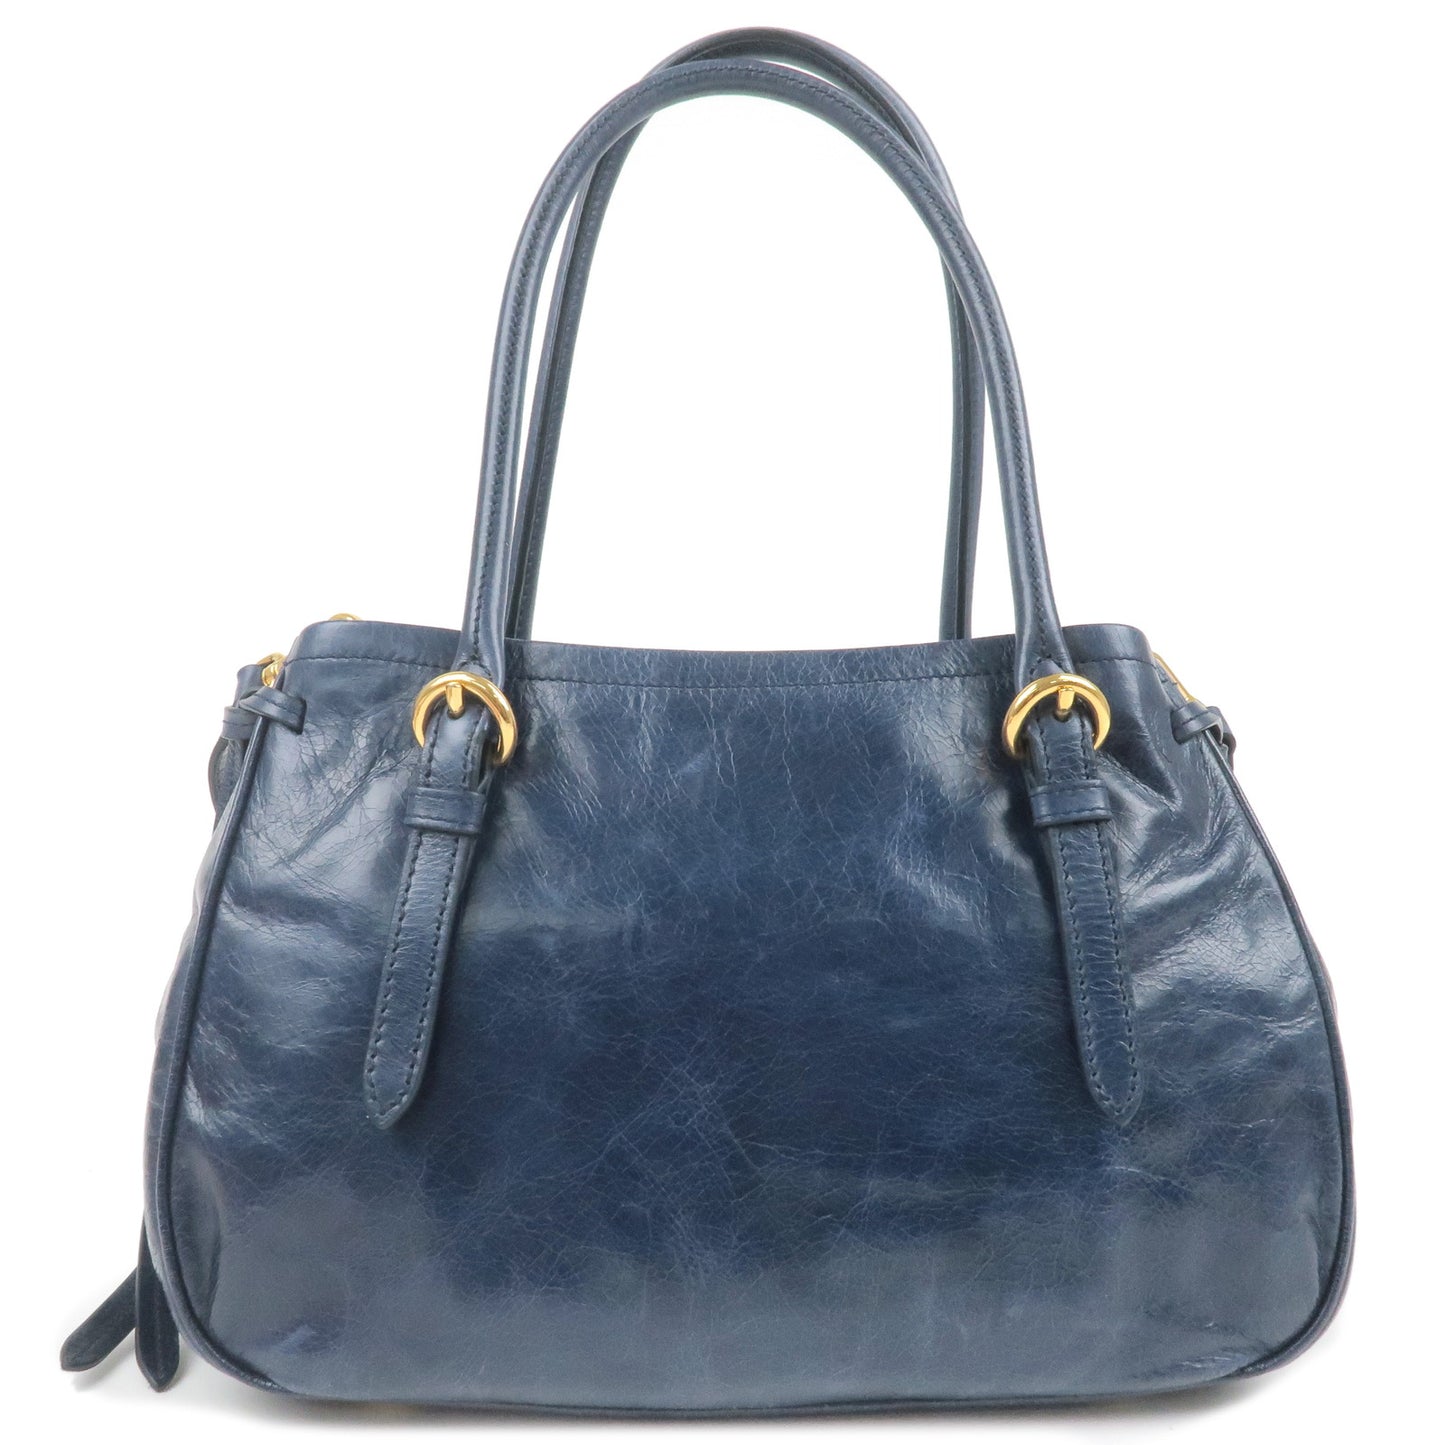 MIU MIU Leather 2Way Shoulder Bag Hand Bag Navy RR2015